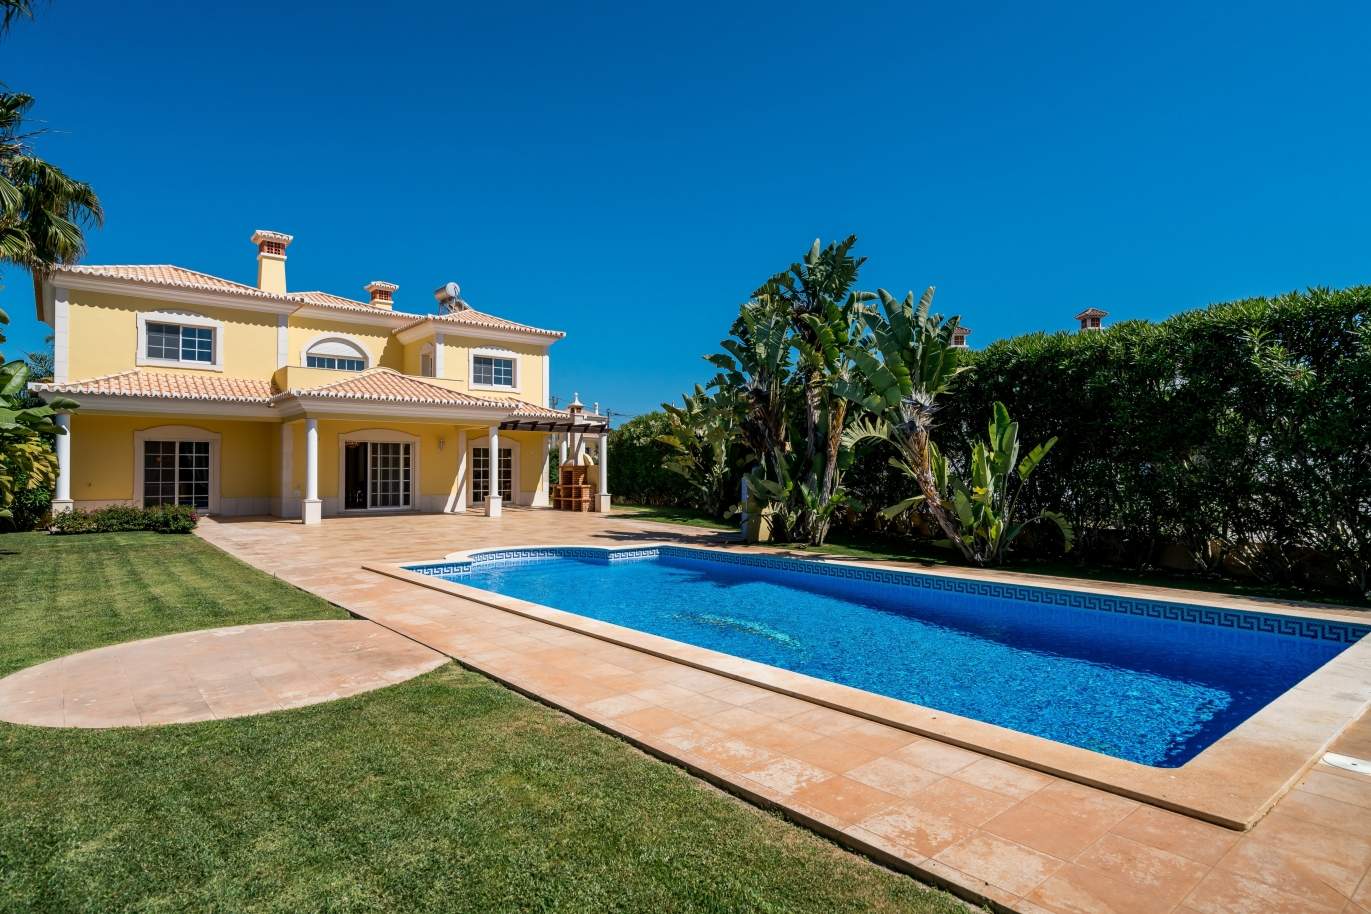 Venda de moradia com piscina em Quarteira, Algarve_105136